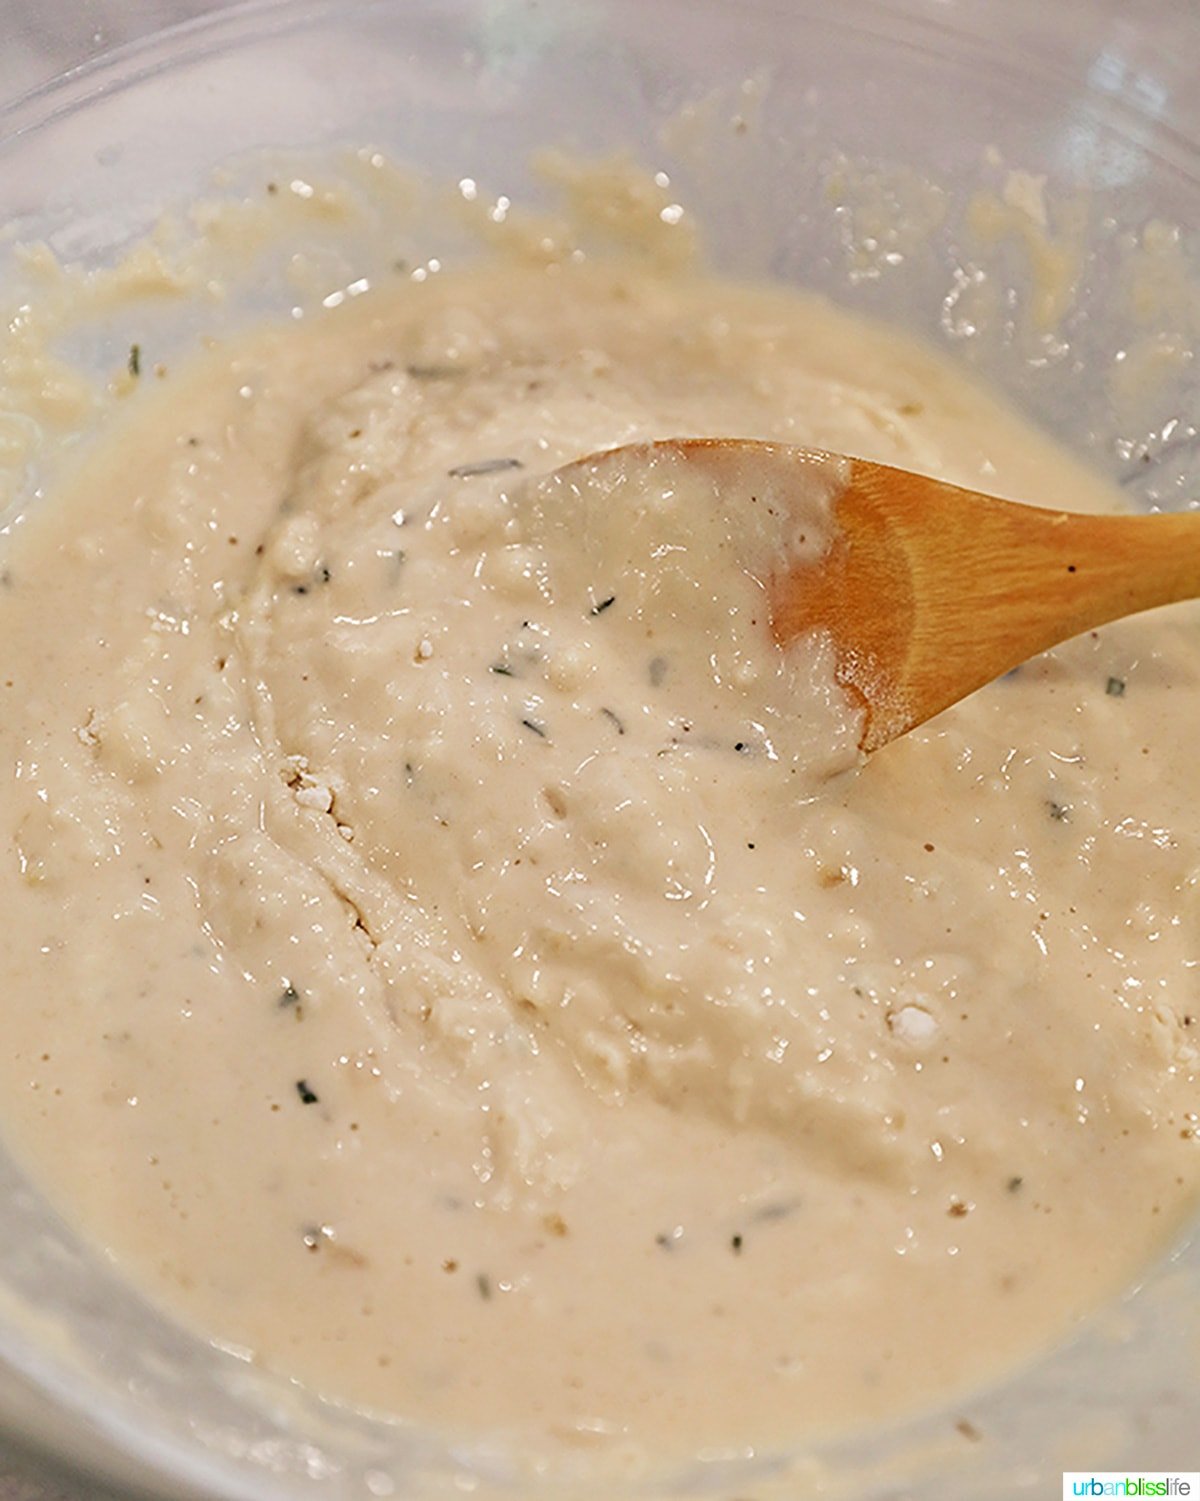 mixing focaccia dough